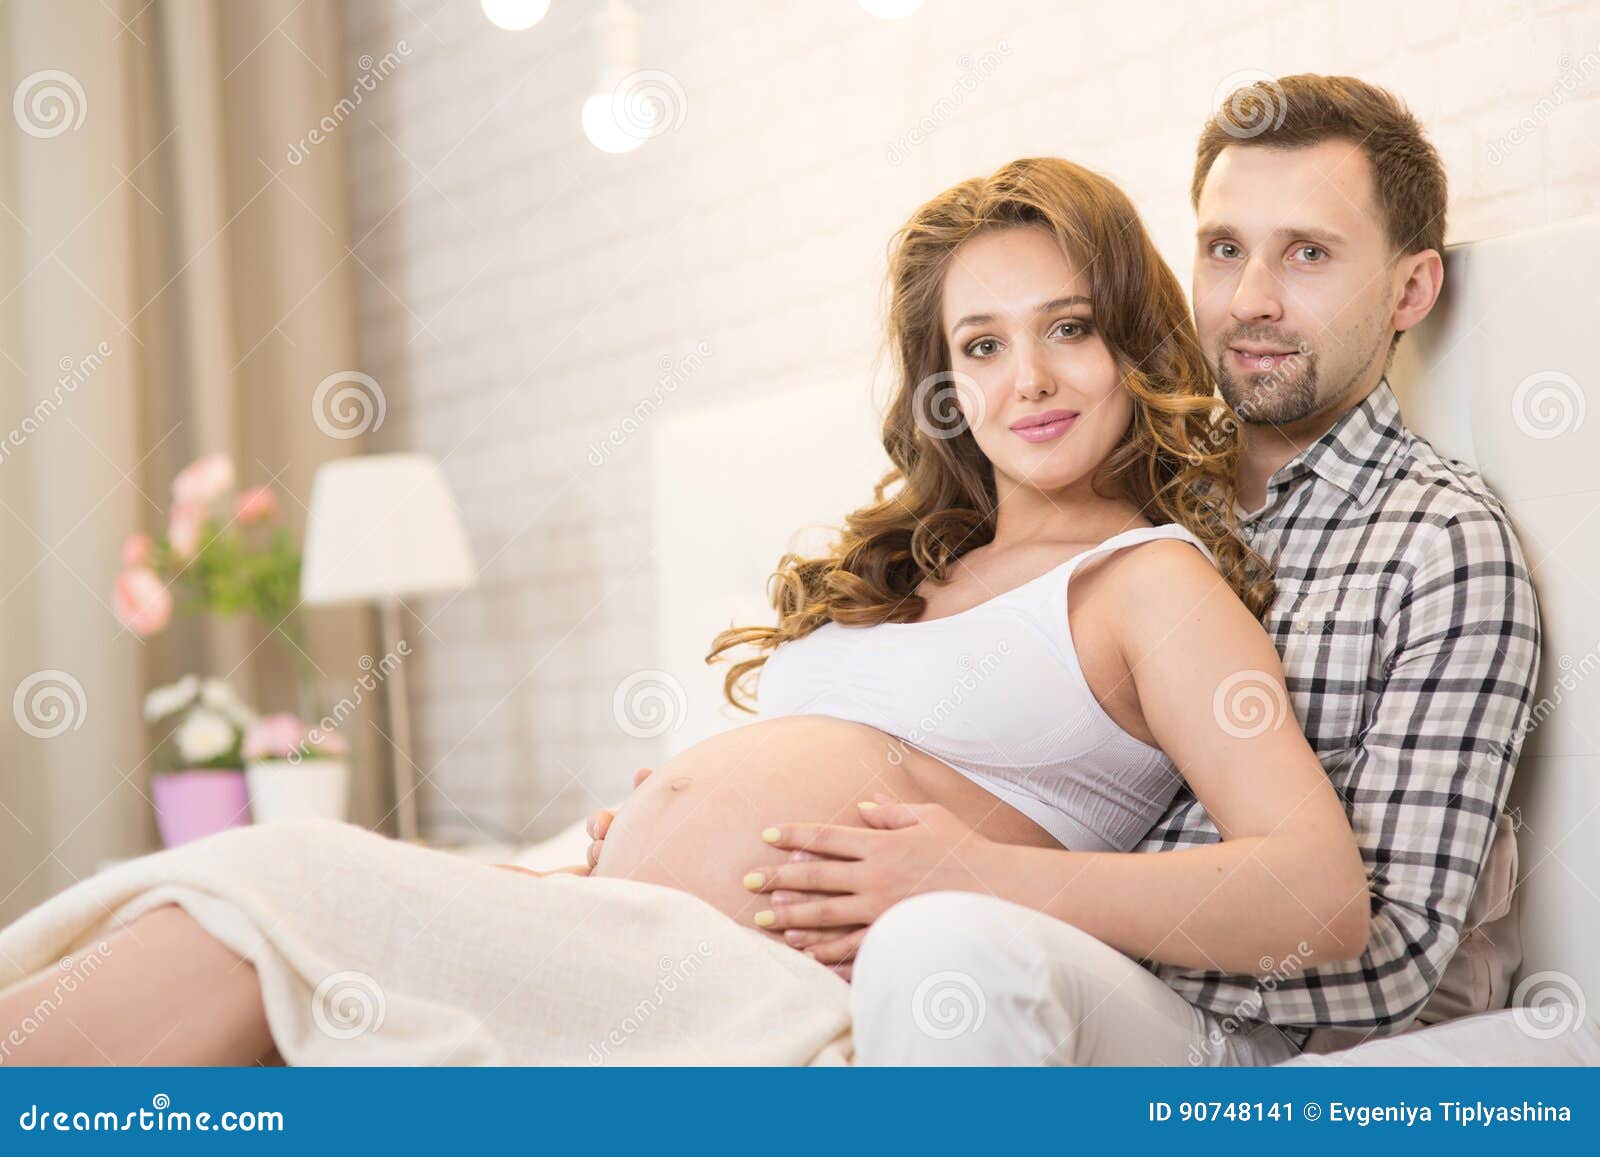 Беременную жену друзьям видео. Фотосессия мужа и беременной жены.